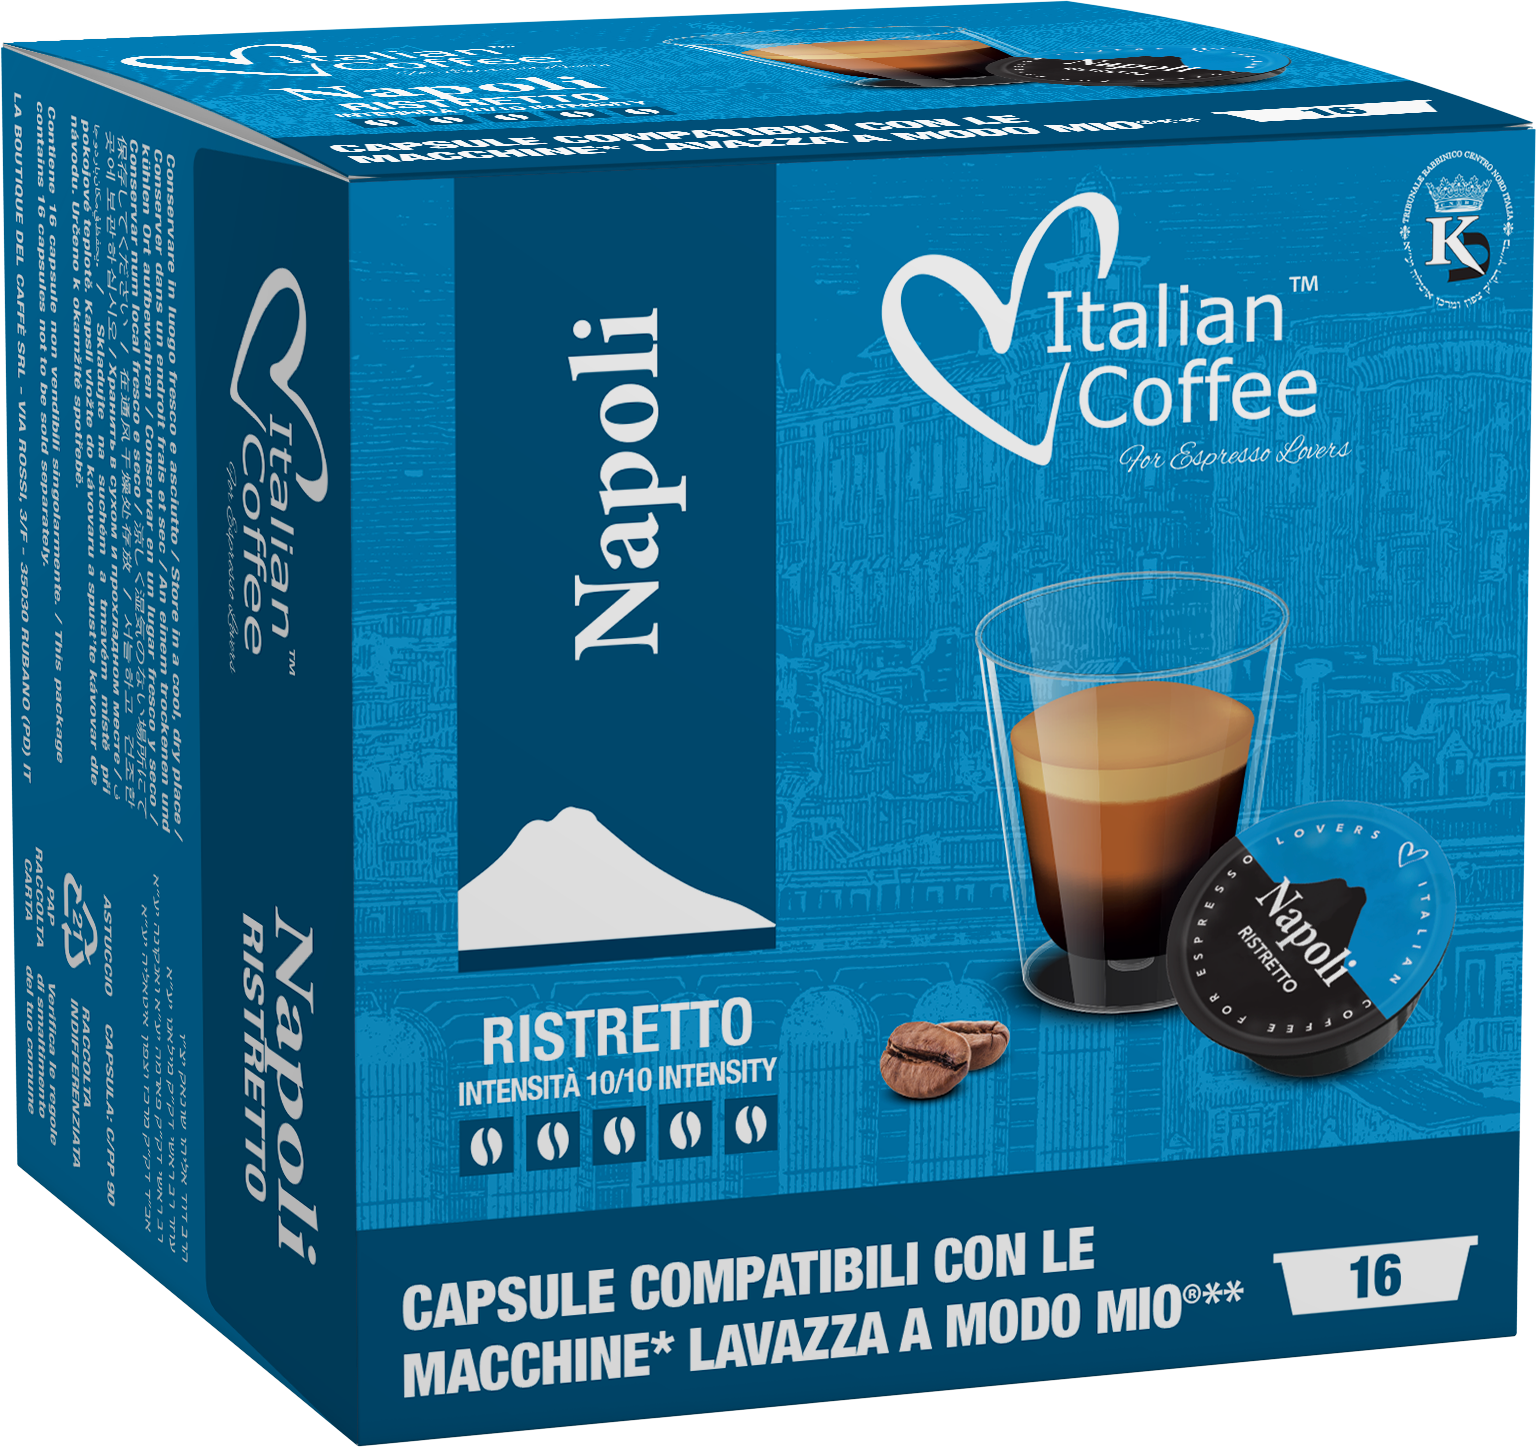 Nescafé Dolce Gusto Espresso Café con Leche en Cápsulas Coffee Capsules  With Milk, 10 g / 0.35 oz each (box of 16)